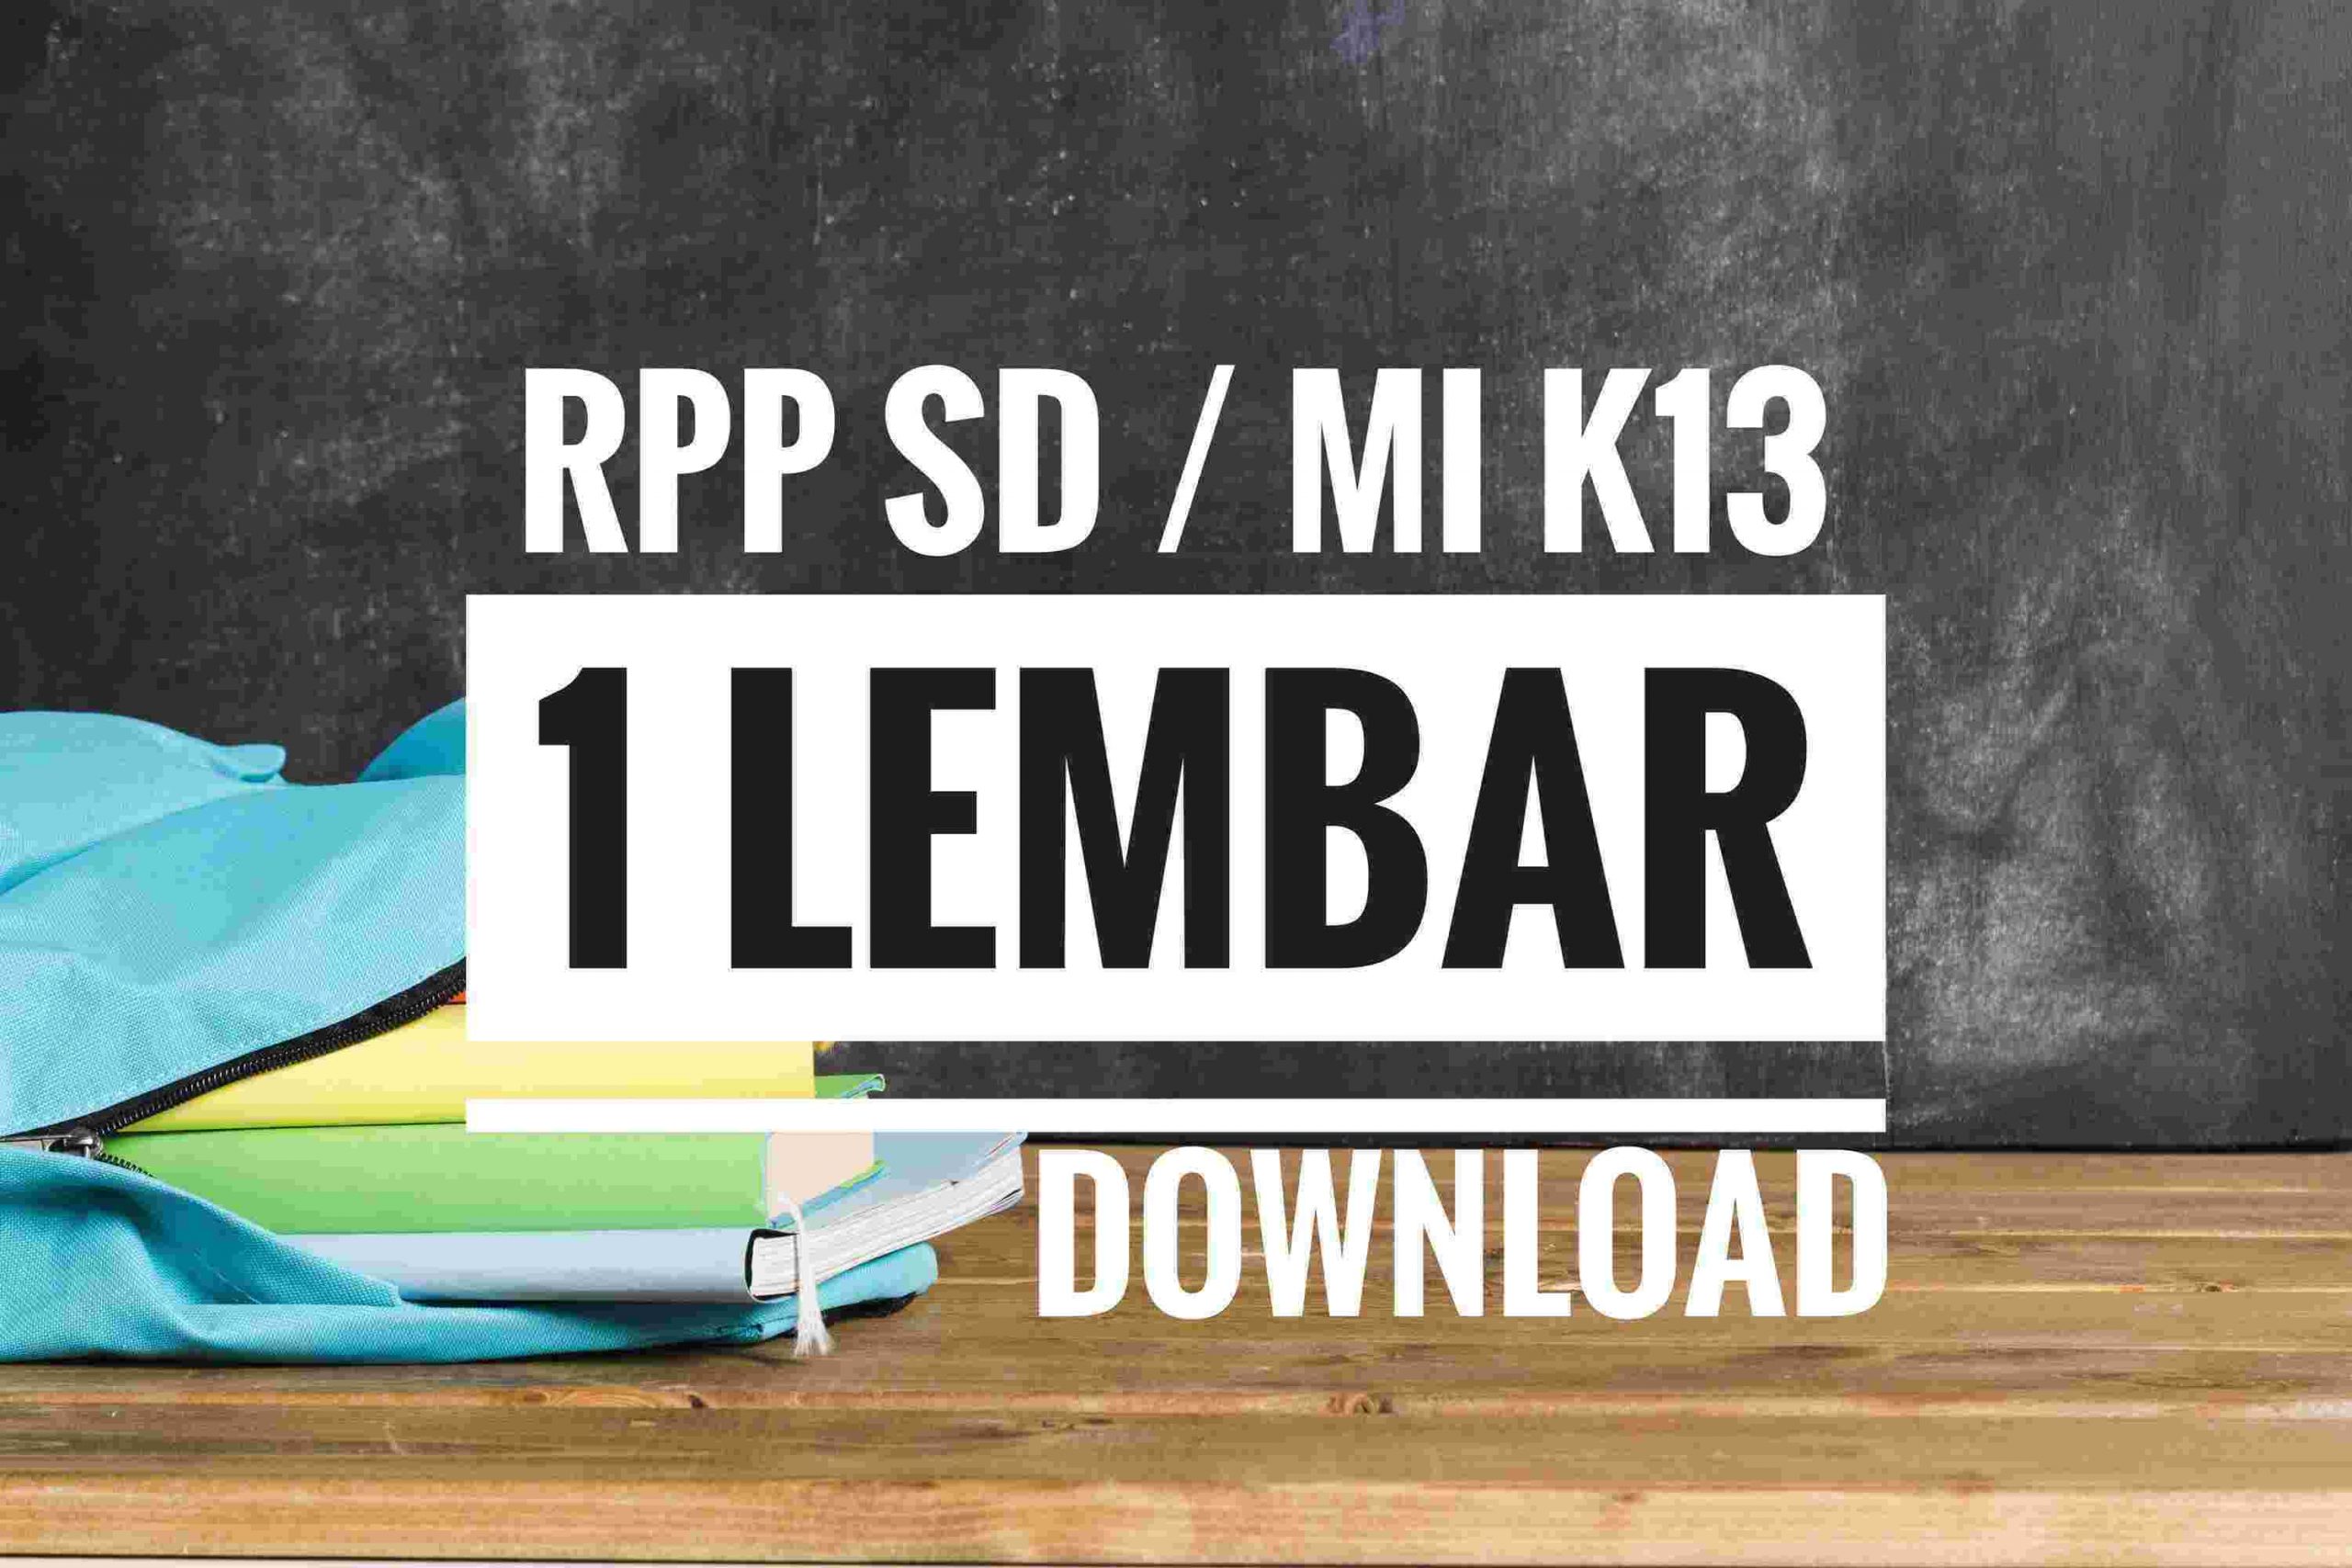 Download RPP sd 1 lembar